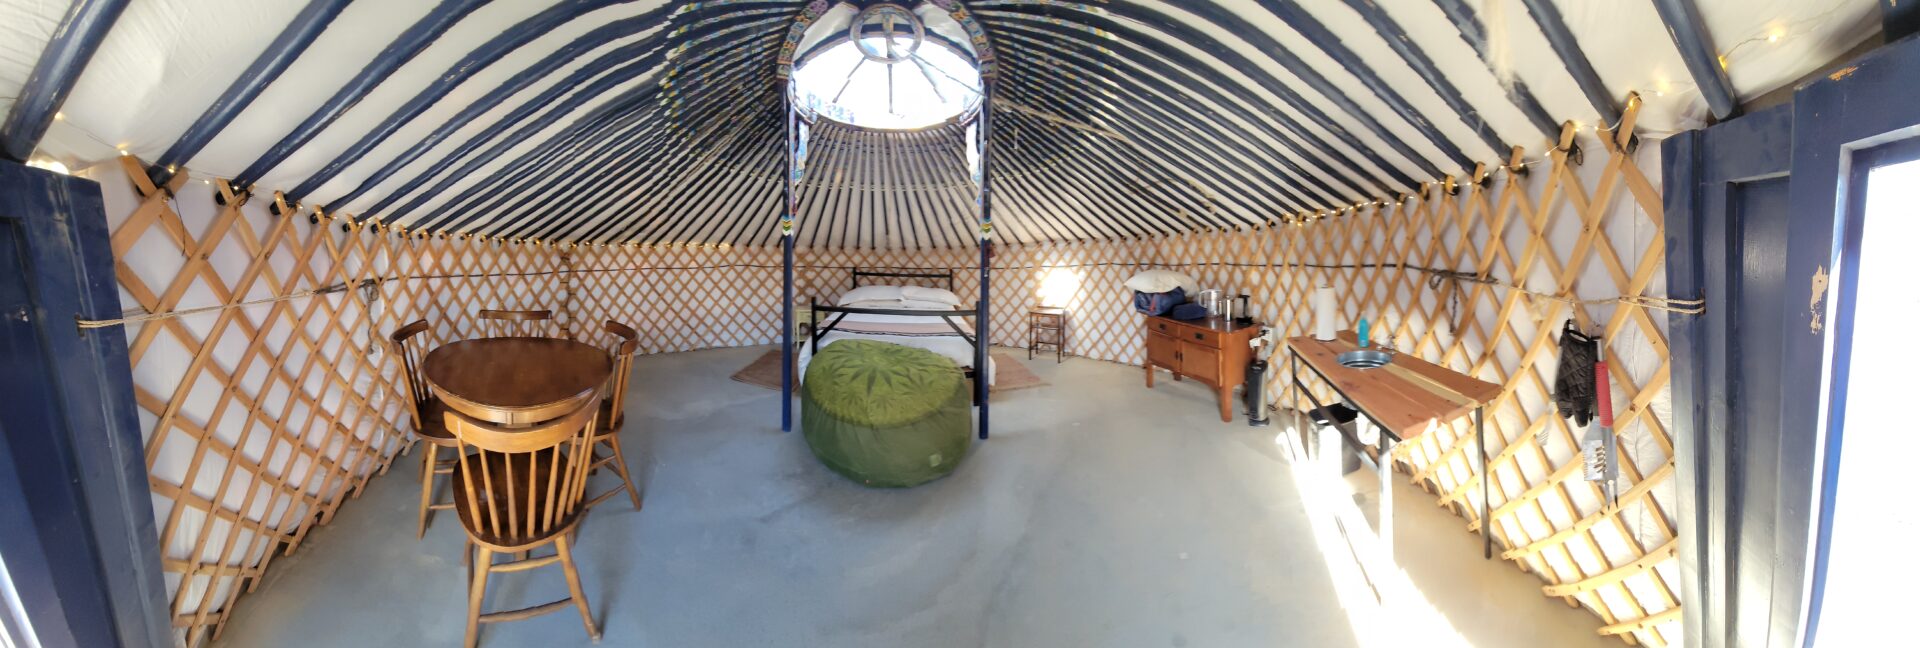 Panoramic view inside yurt-6f66b22